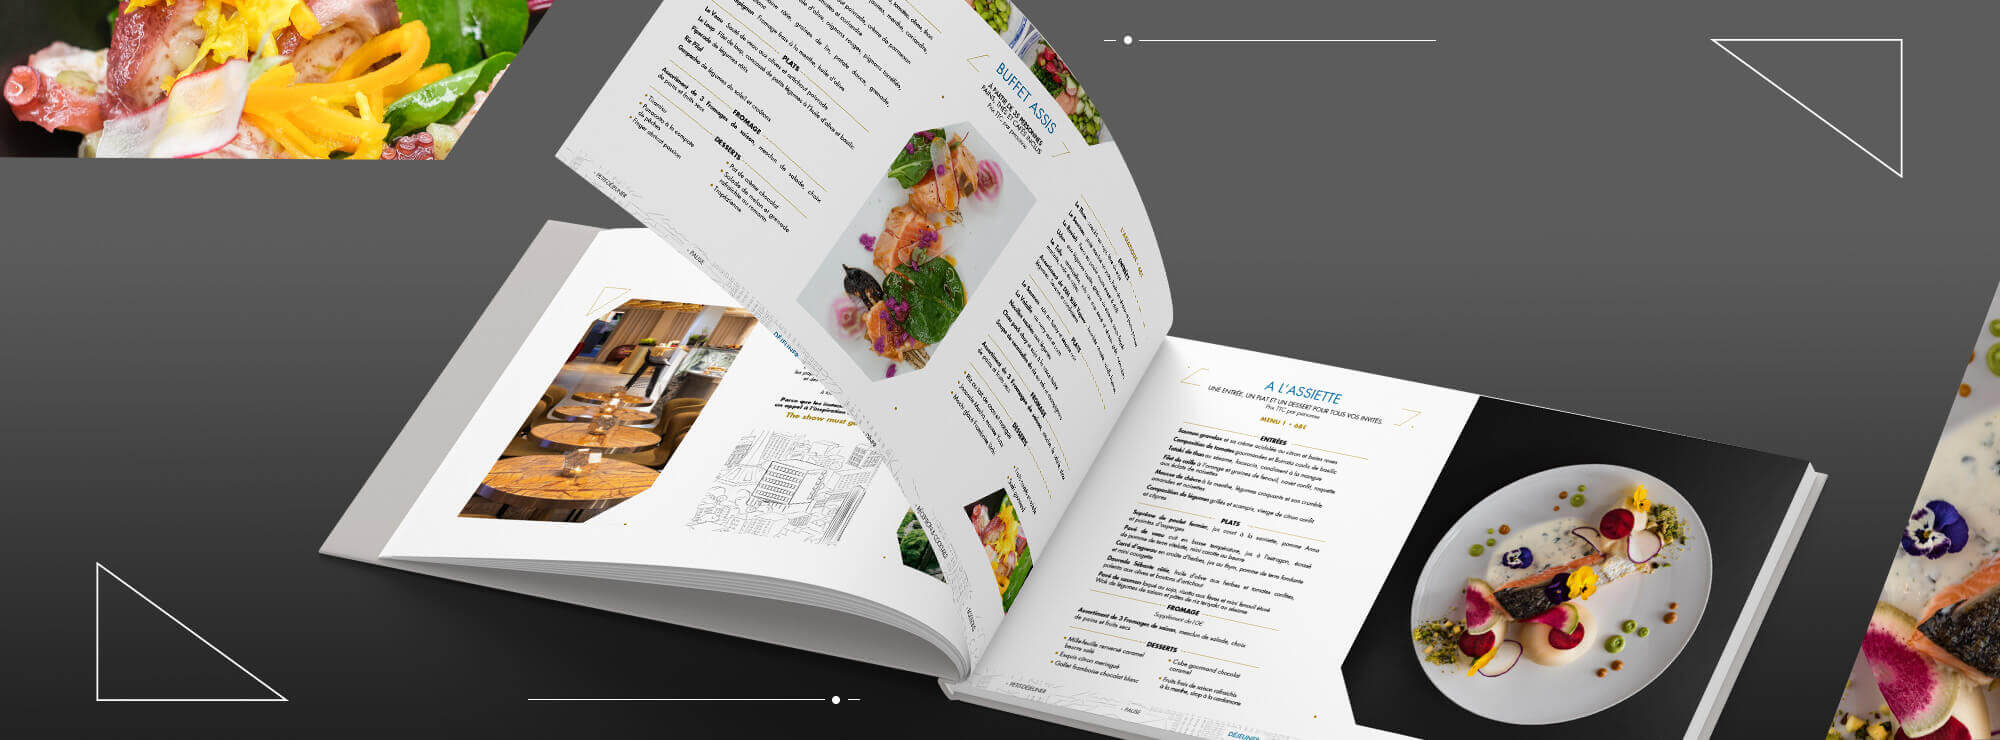 05 pullman hotel menu restaurannt plat gastronomie design interieur luxe.jpg